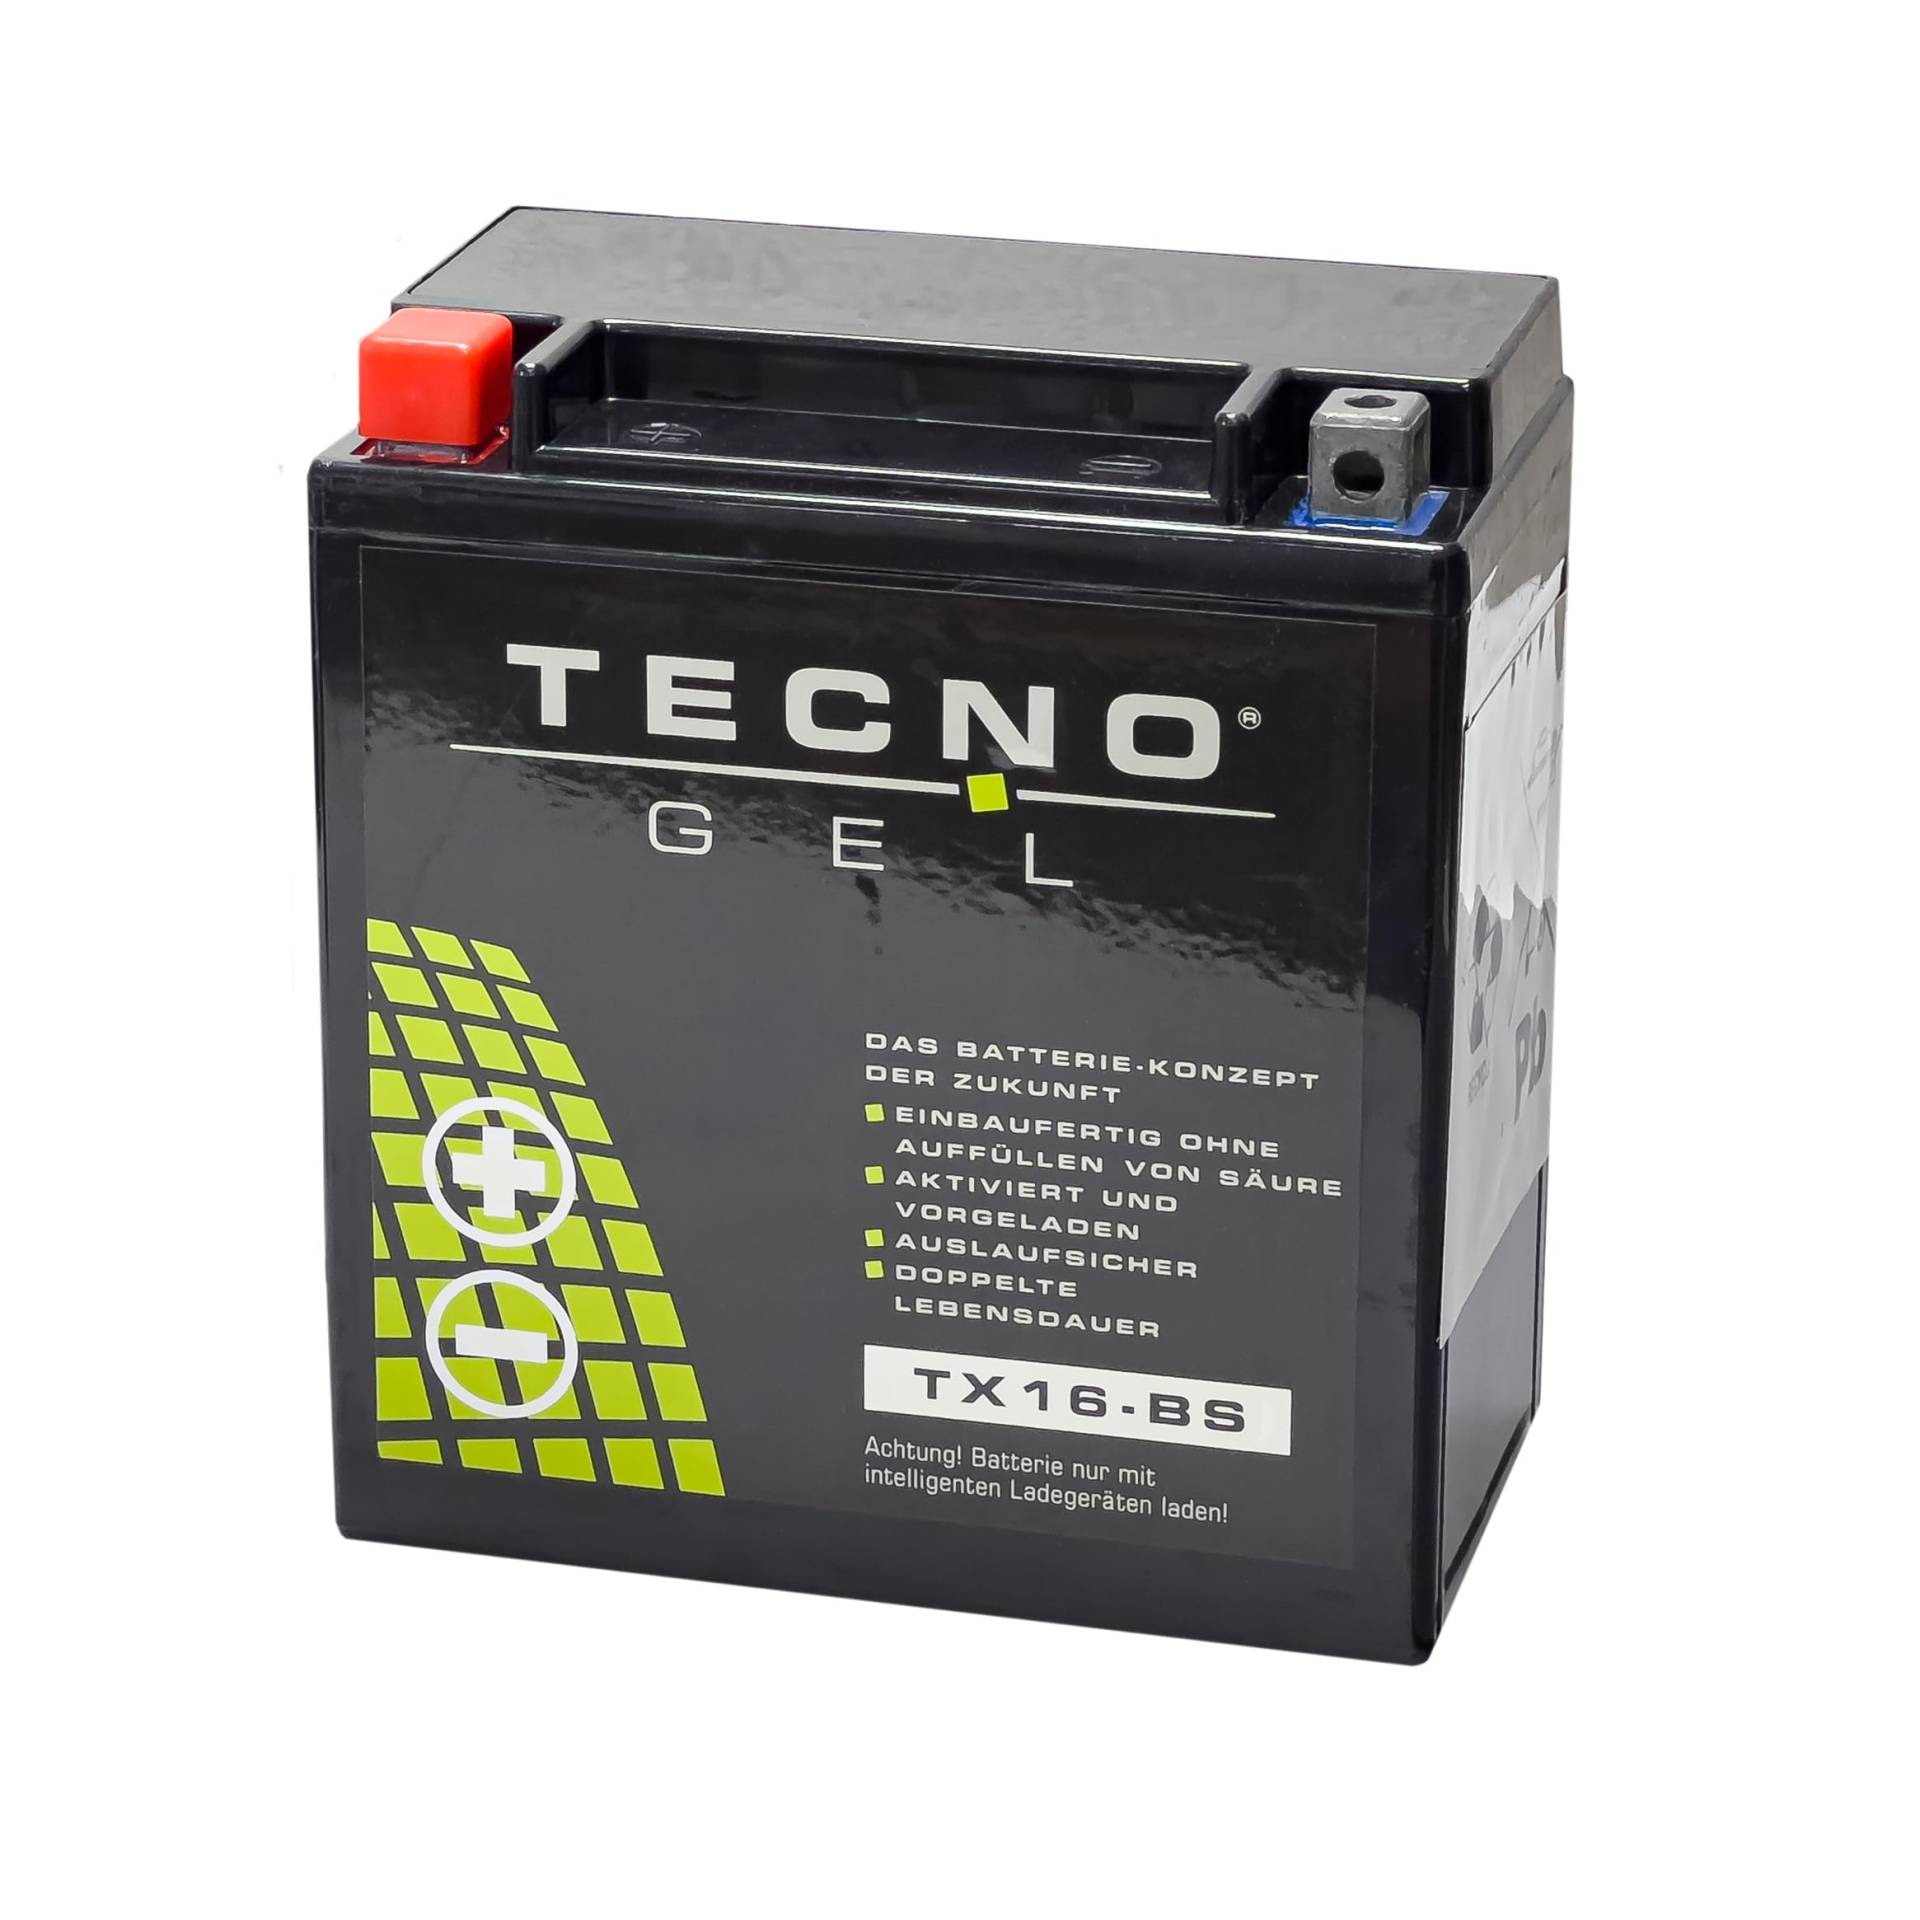 TECNO-GEL Motorrad-Batterie für YTX16-BS für LINHAI CUV 400 2011-2015, 12V Gel-Batterie 14Ah (DIN 51490), 150x87x161 mm von Wirth-Federn